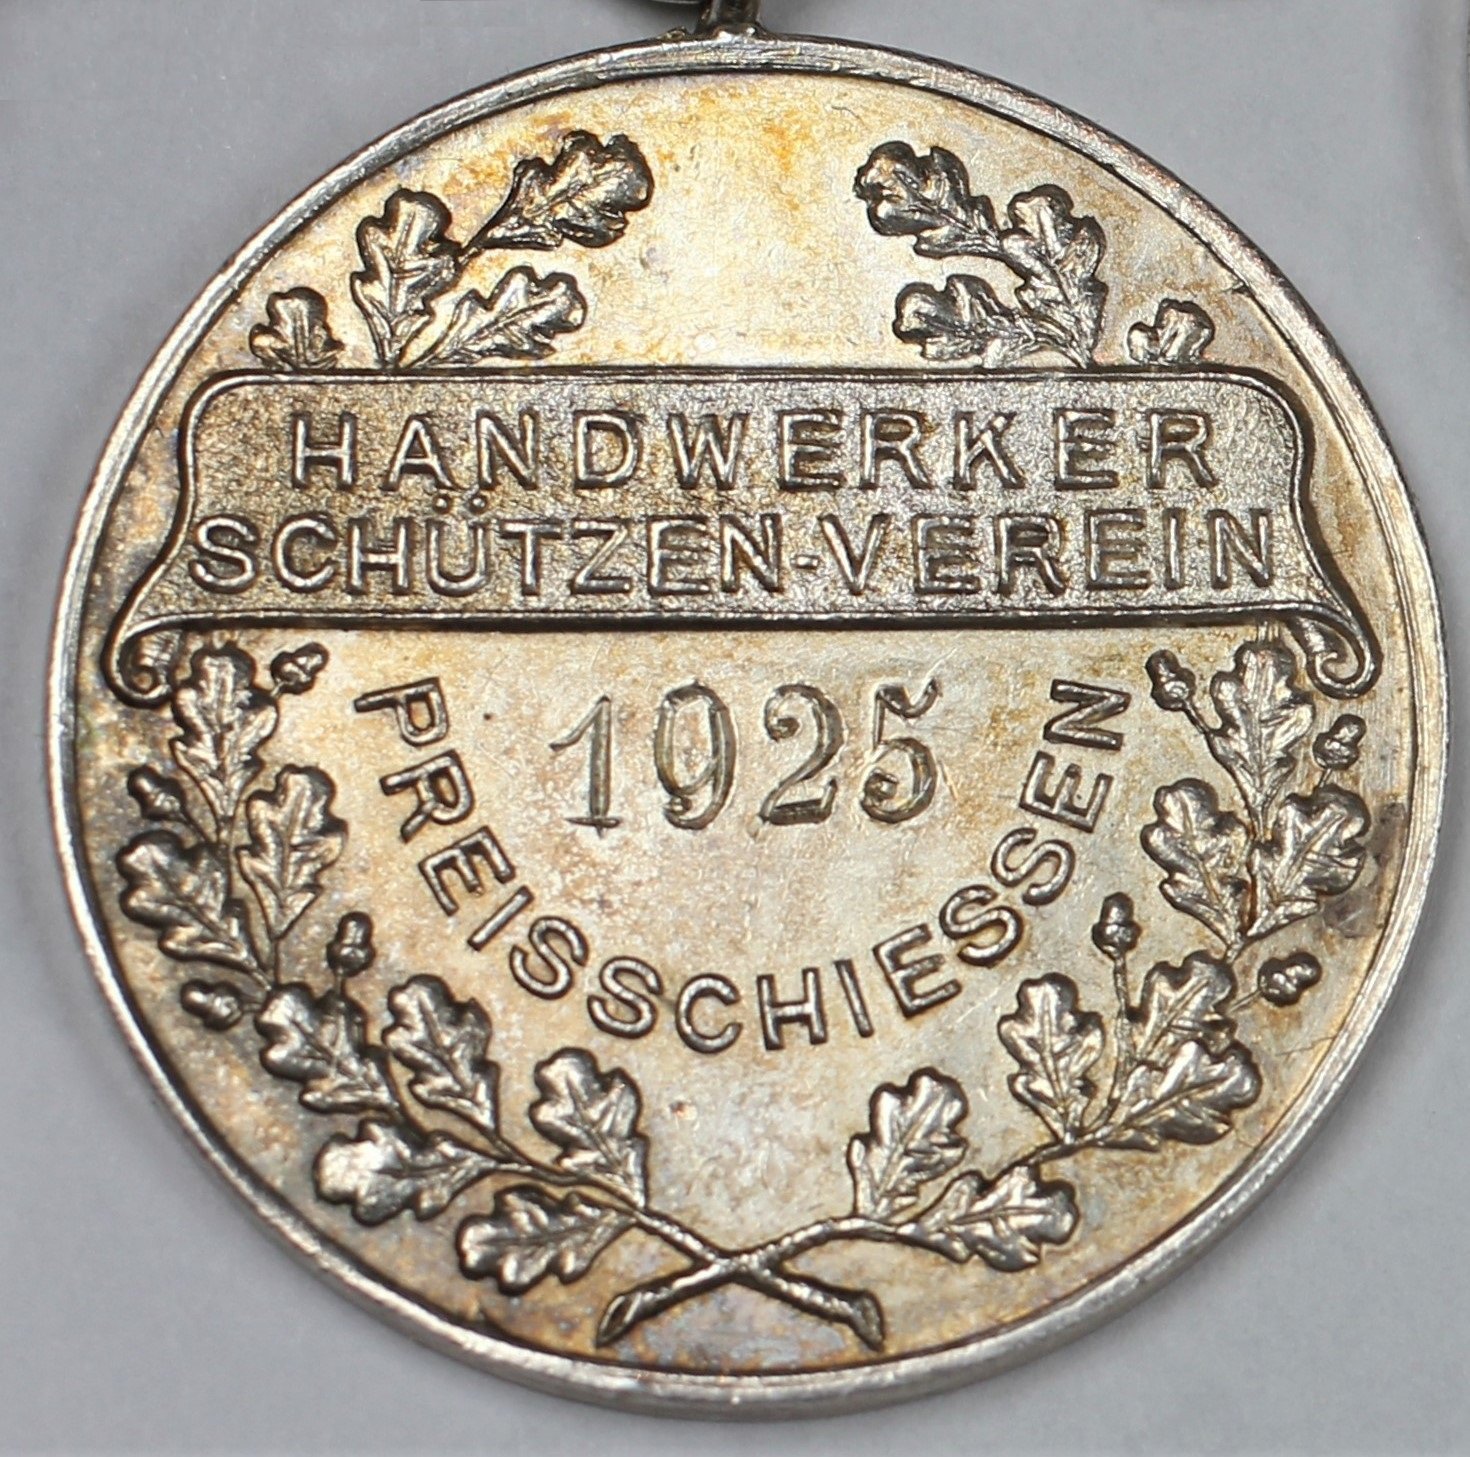 Medaille Preisschießen 1925 (Stadtmuseum Lippstadt CC BY-NC-ND)